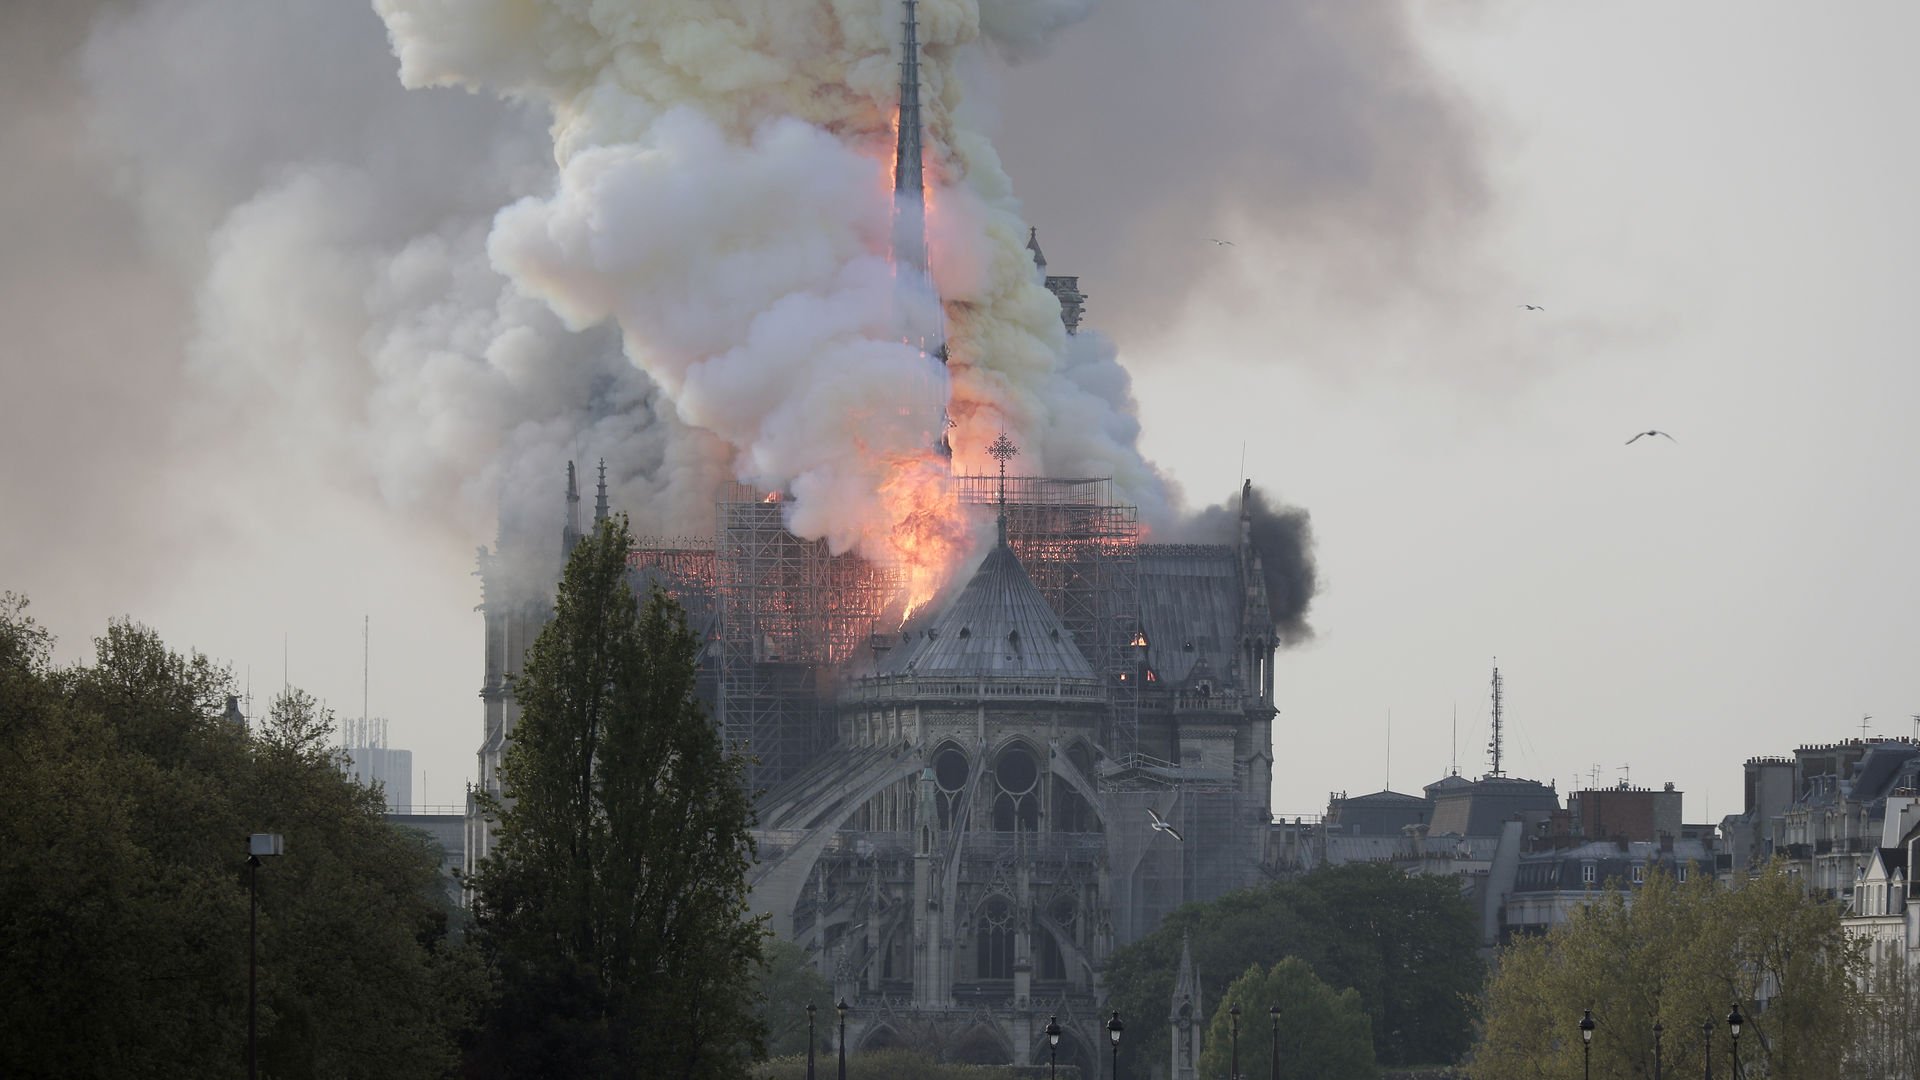 850 yıllık Notre Dame Katedrali 8 saatte kül oldu! Savcılık açıklama yaptı